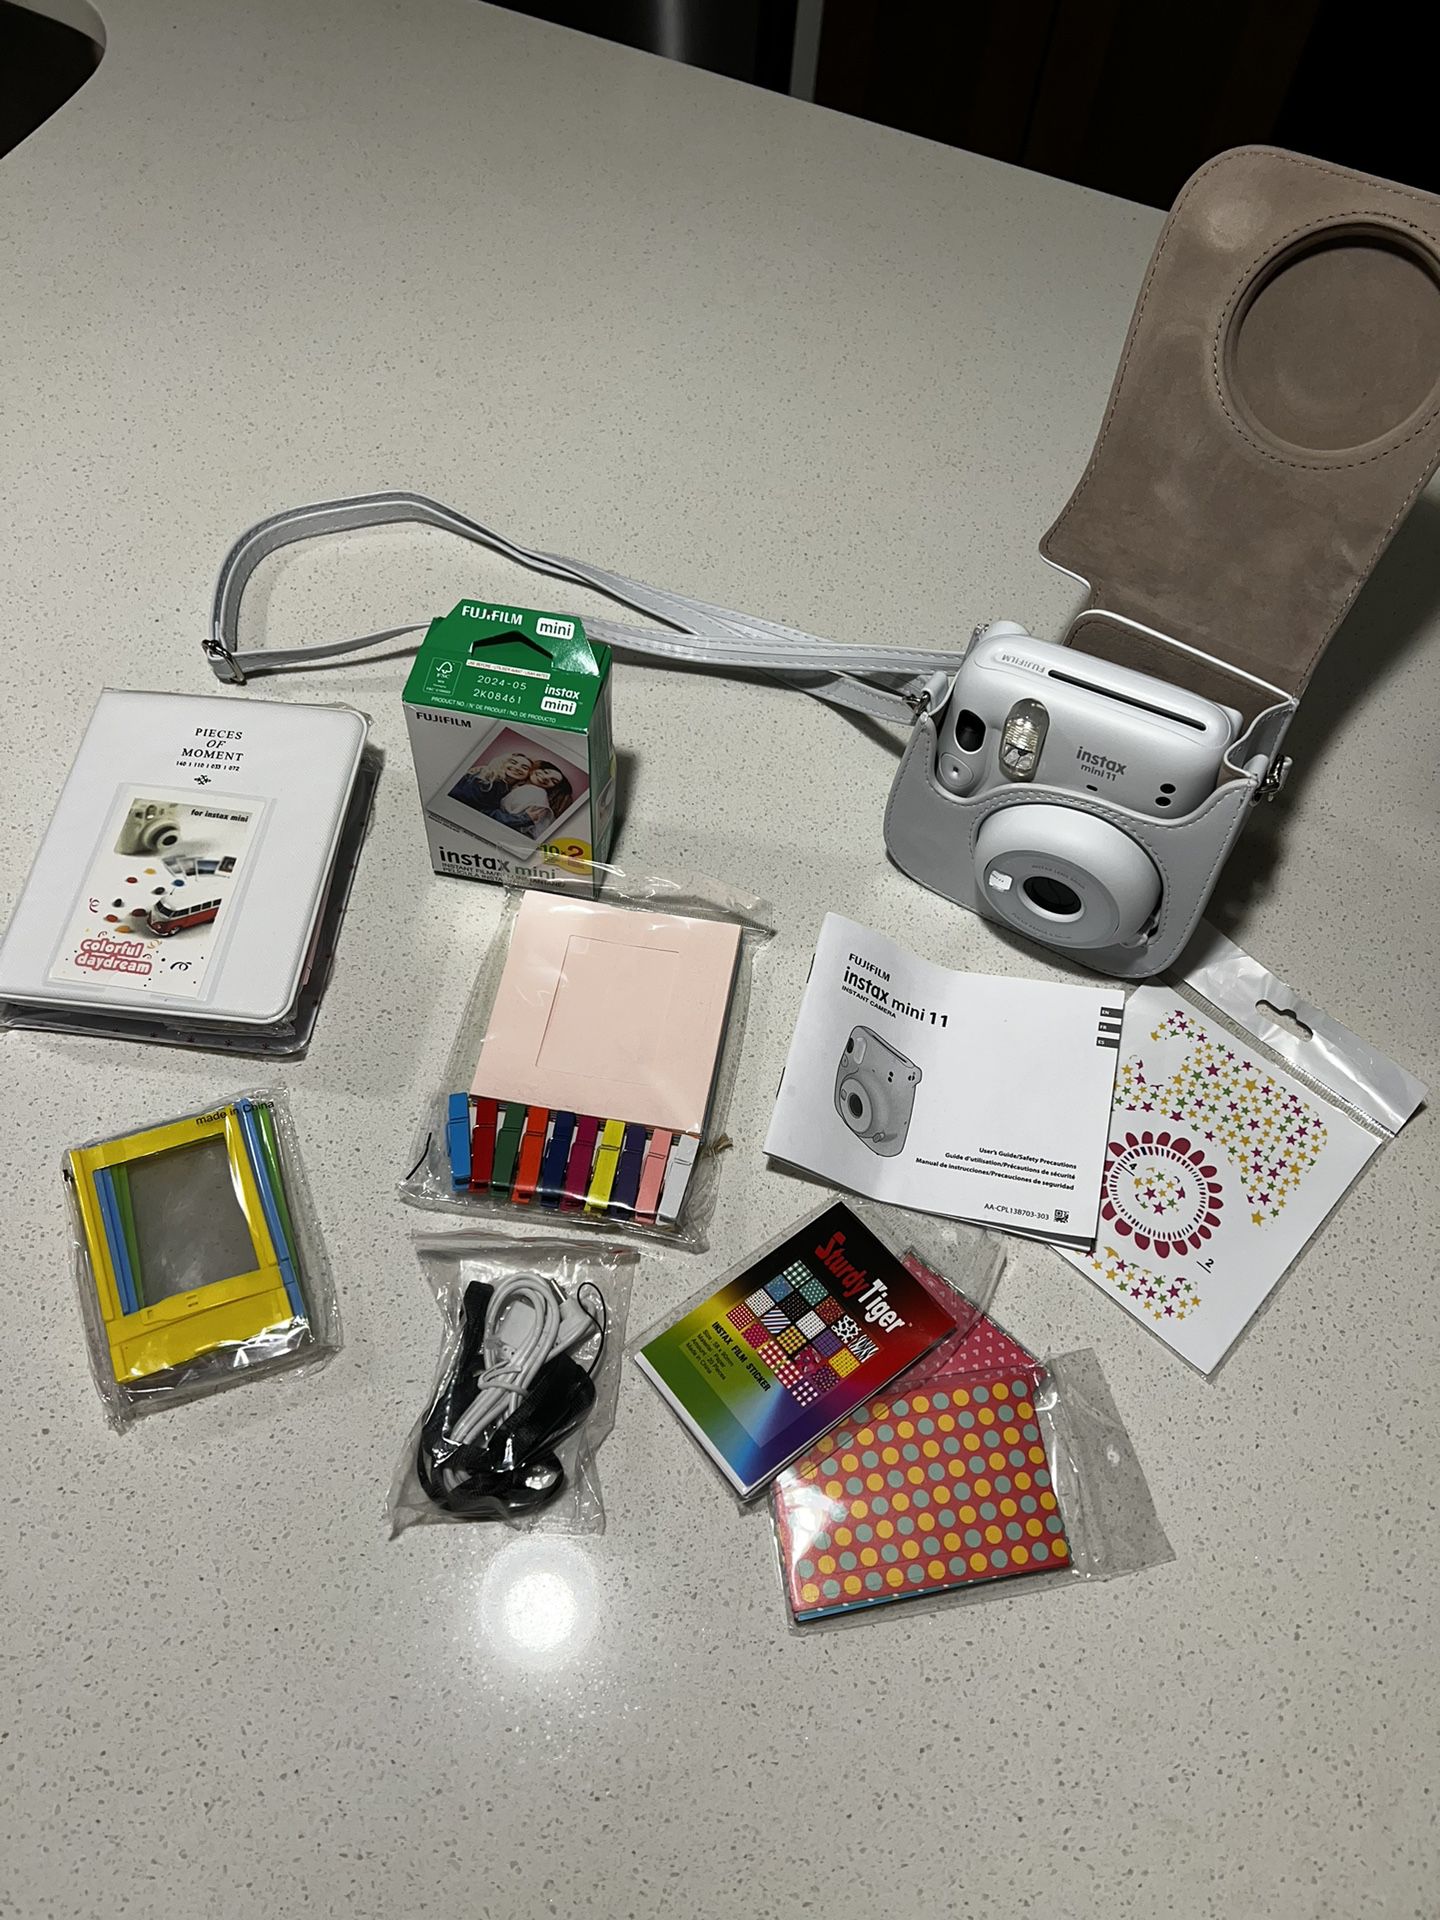 polaroid camera + kit and extra film